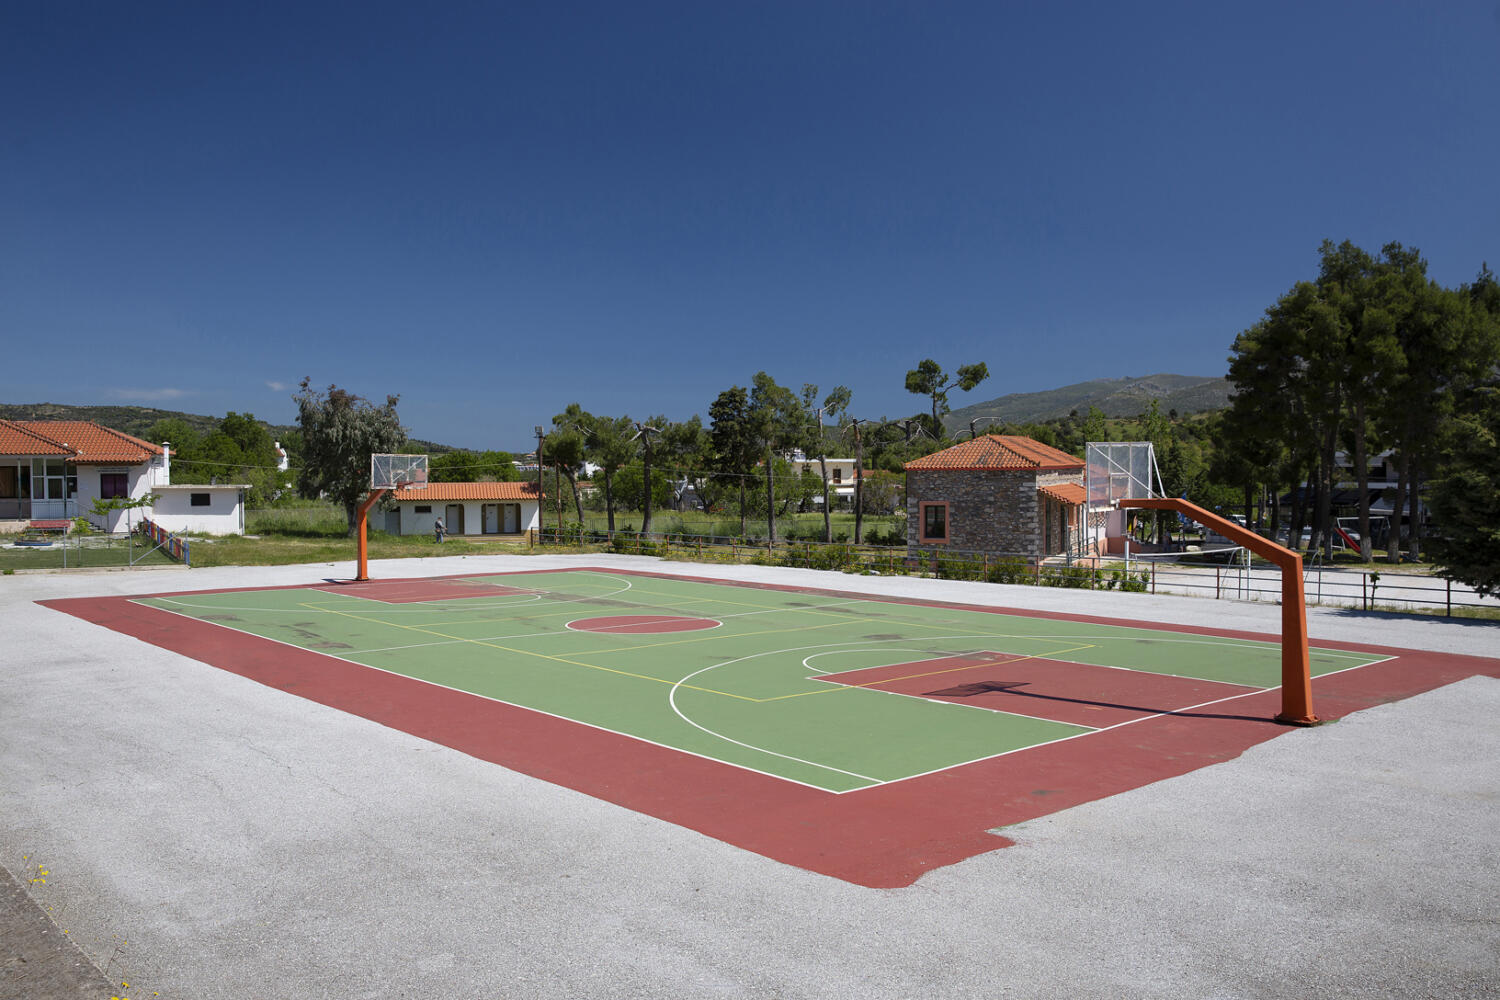 Γήπεδο μπάσκετ, χωριό Νεοχώρι. Φωτογραφία: ©Βασίλης Συκάς, για τον Δήμο Κύμης-Αλιβερίου